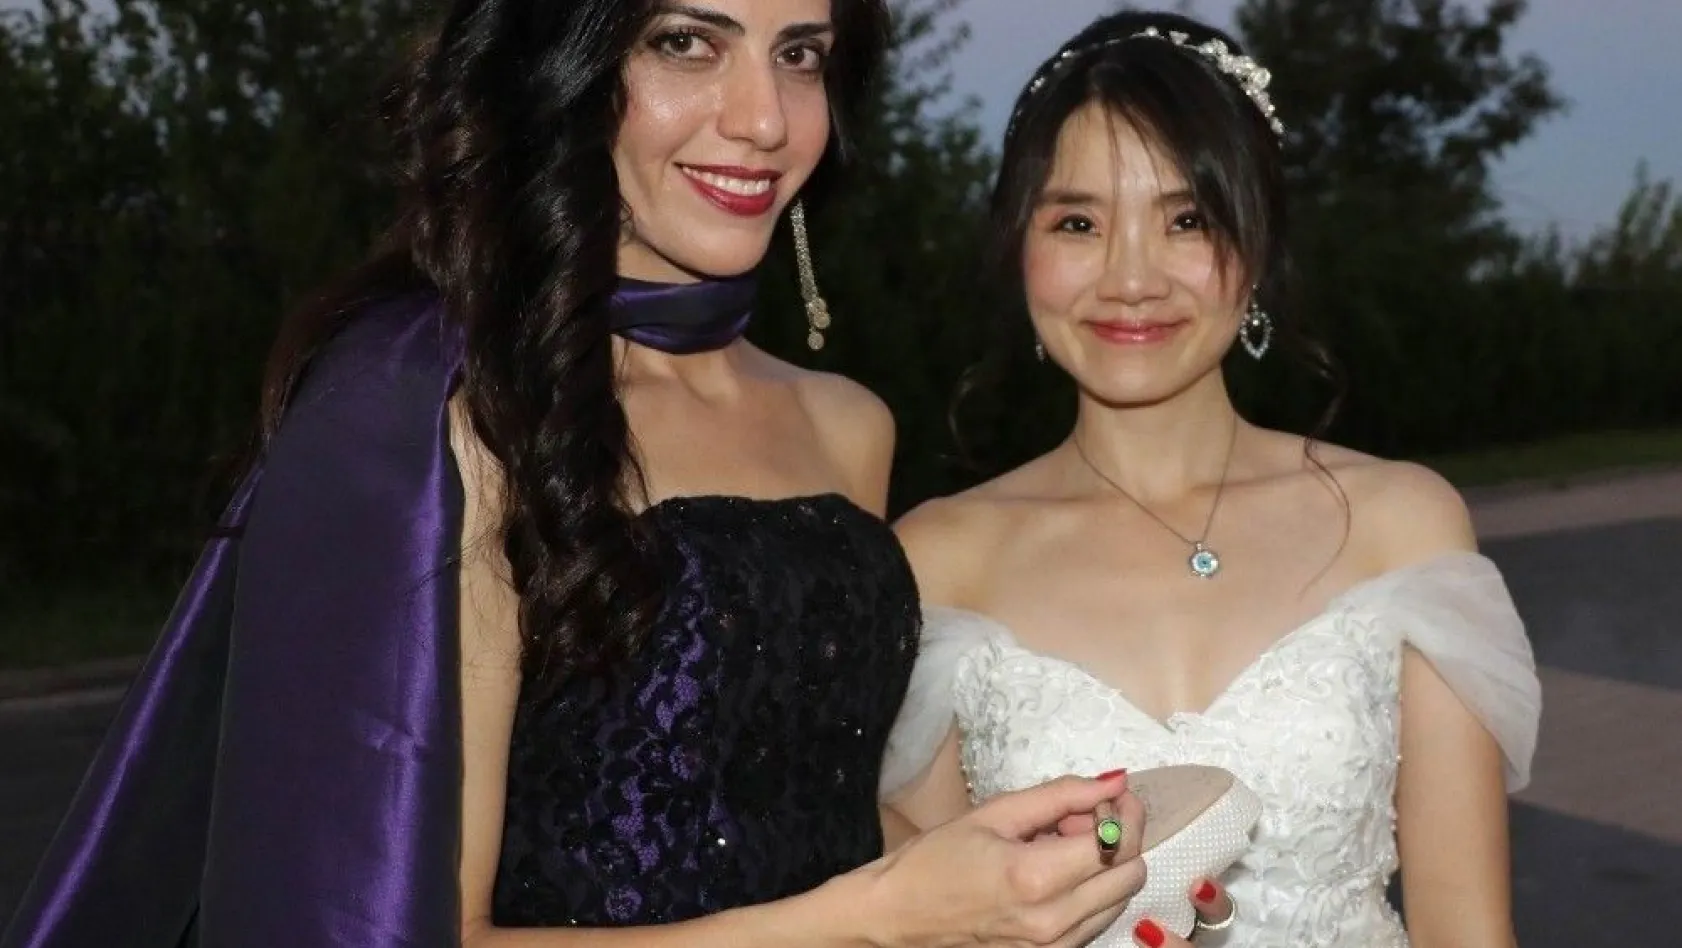 Gelin Tayvan'dan damat Amerika'dan düğün Diyarbakır'da
